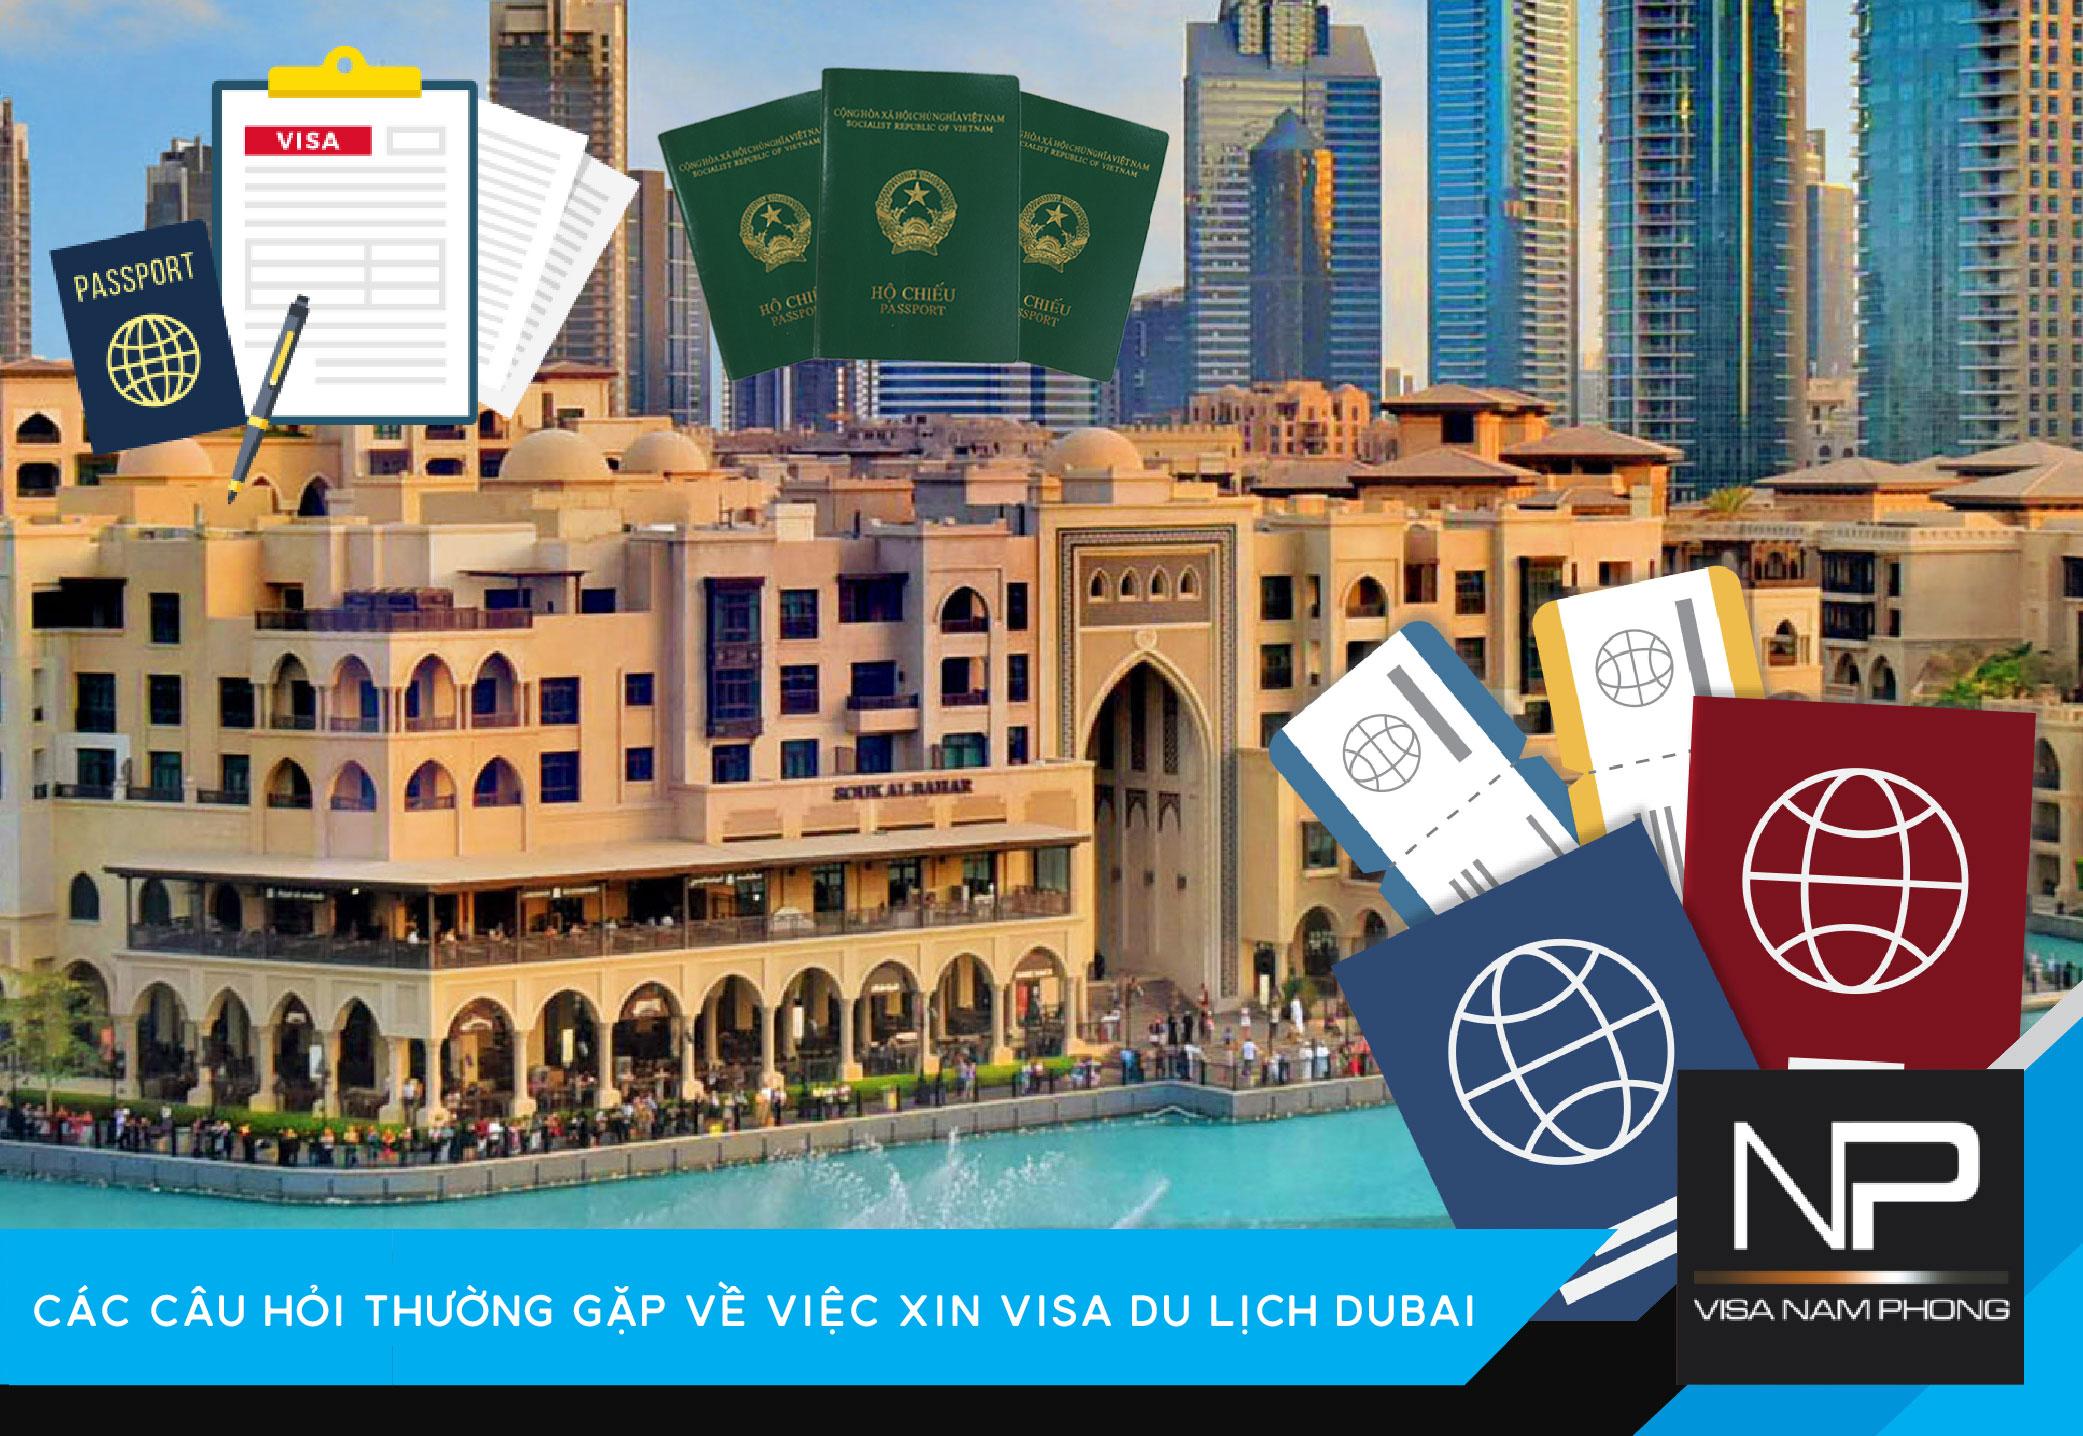 Các câu hỏi thường gặp về việc xin visa du lịch Dubai tại Hải Phòng